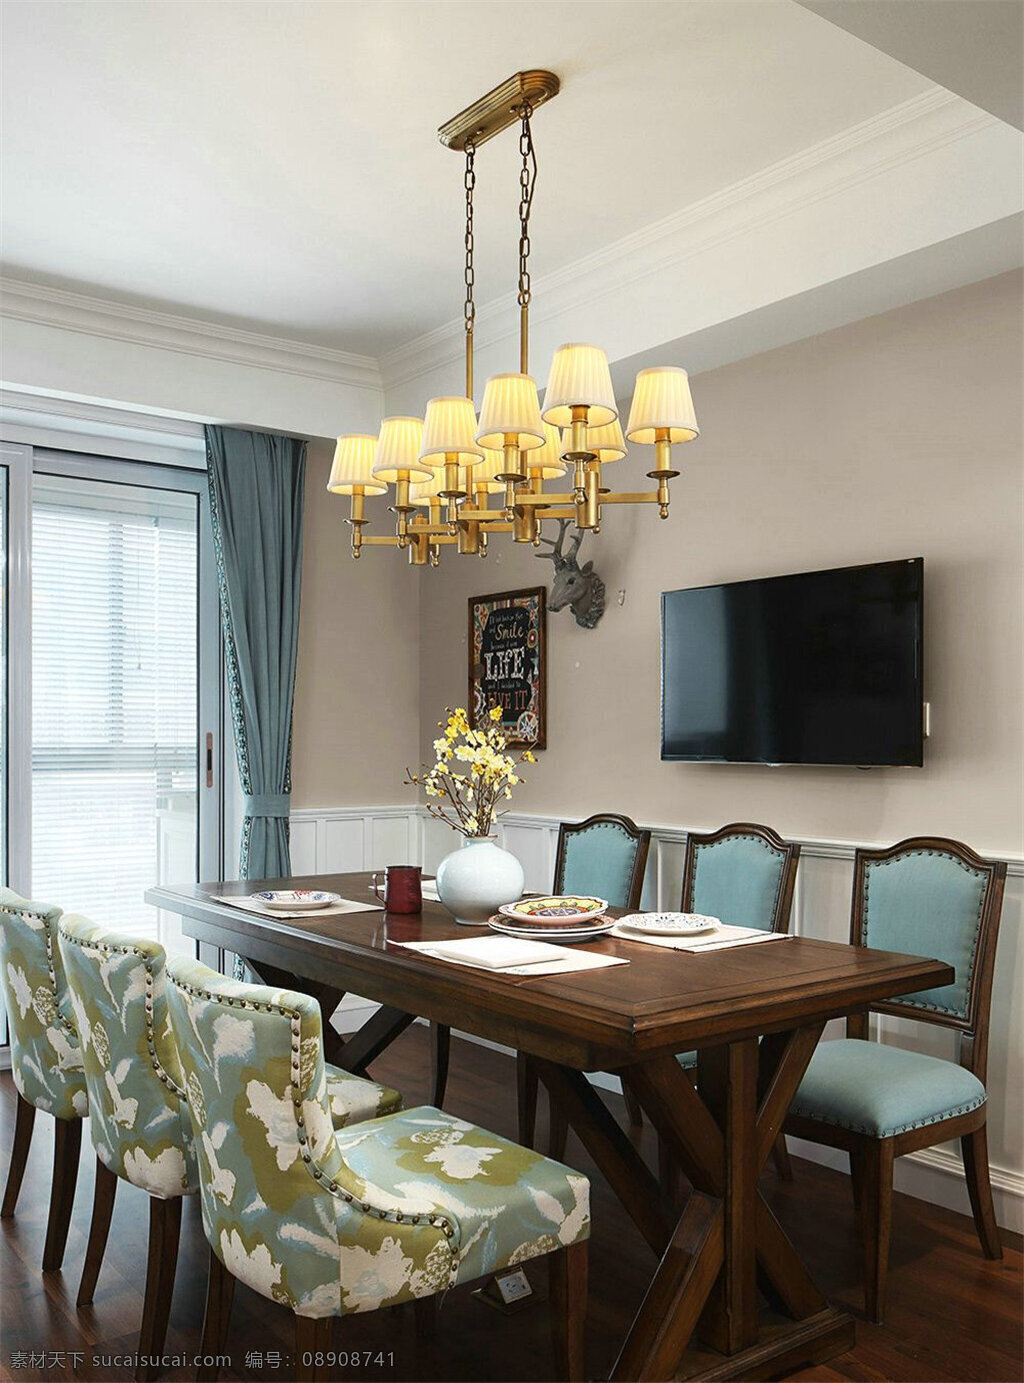 美式 时尚 创意 餐厅 餐桌 设计图 家居 家居生活 室内设计 装修 室内 家具 装修设计 环境设计 大灯